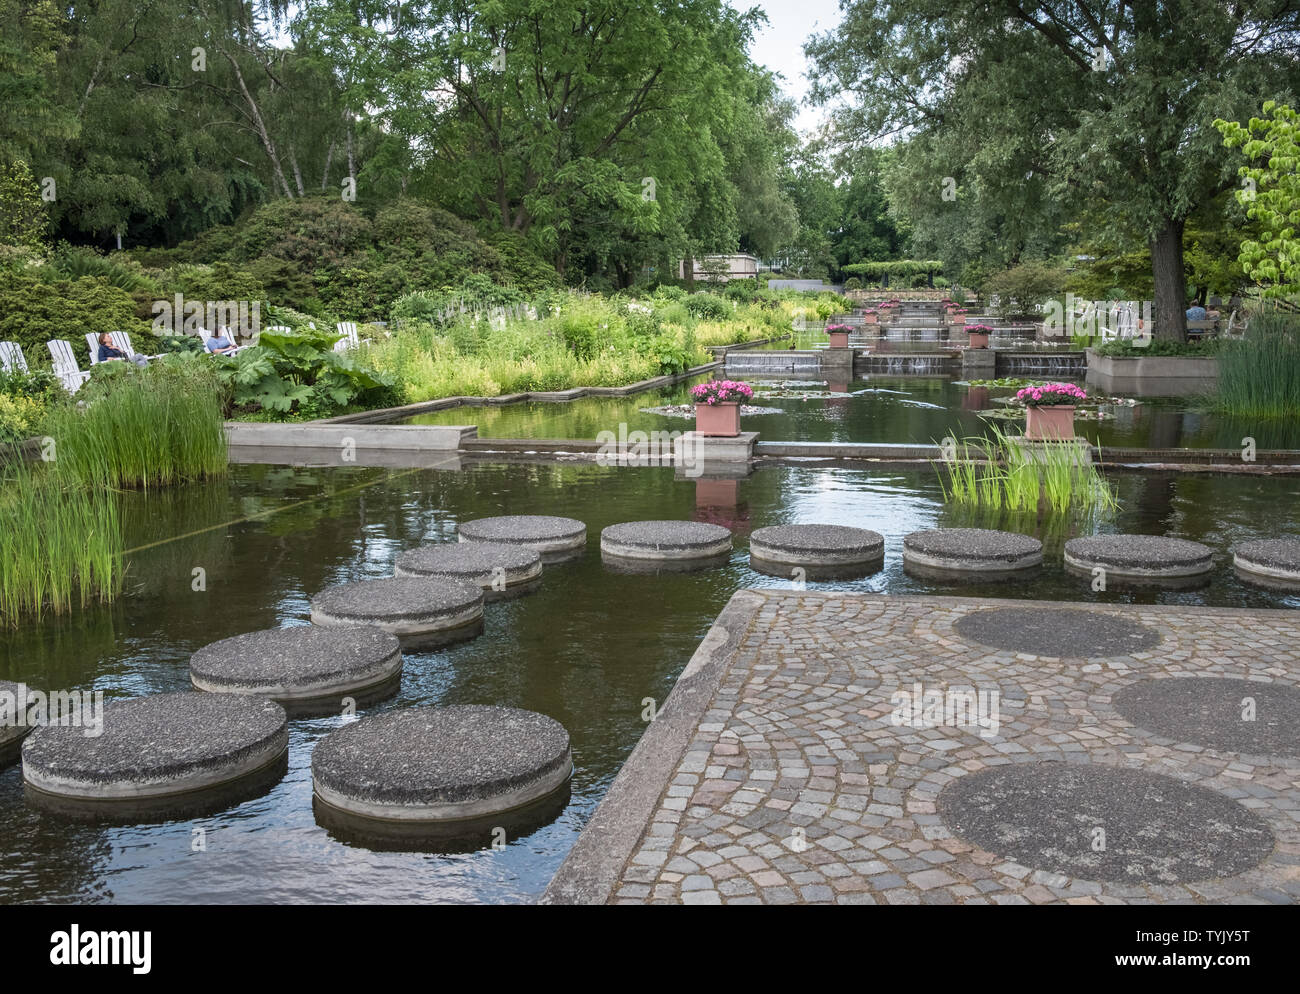 Planten un Blomen (Pflanzen und Blumen), einen 166 Hektar großen öffentlichen städtischen City Park in der neuen Stadt Stadtteil von Hamburg, in Deutschland. Stockfoto